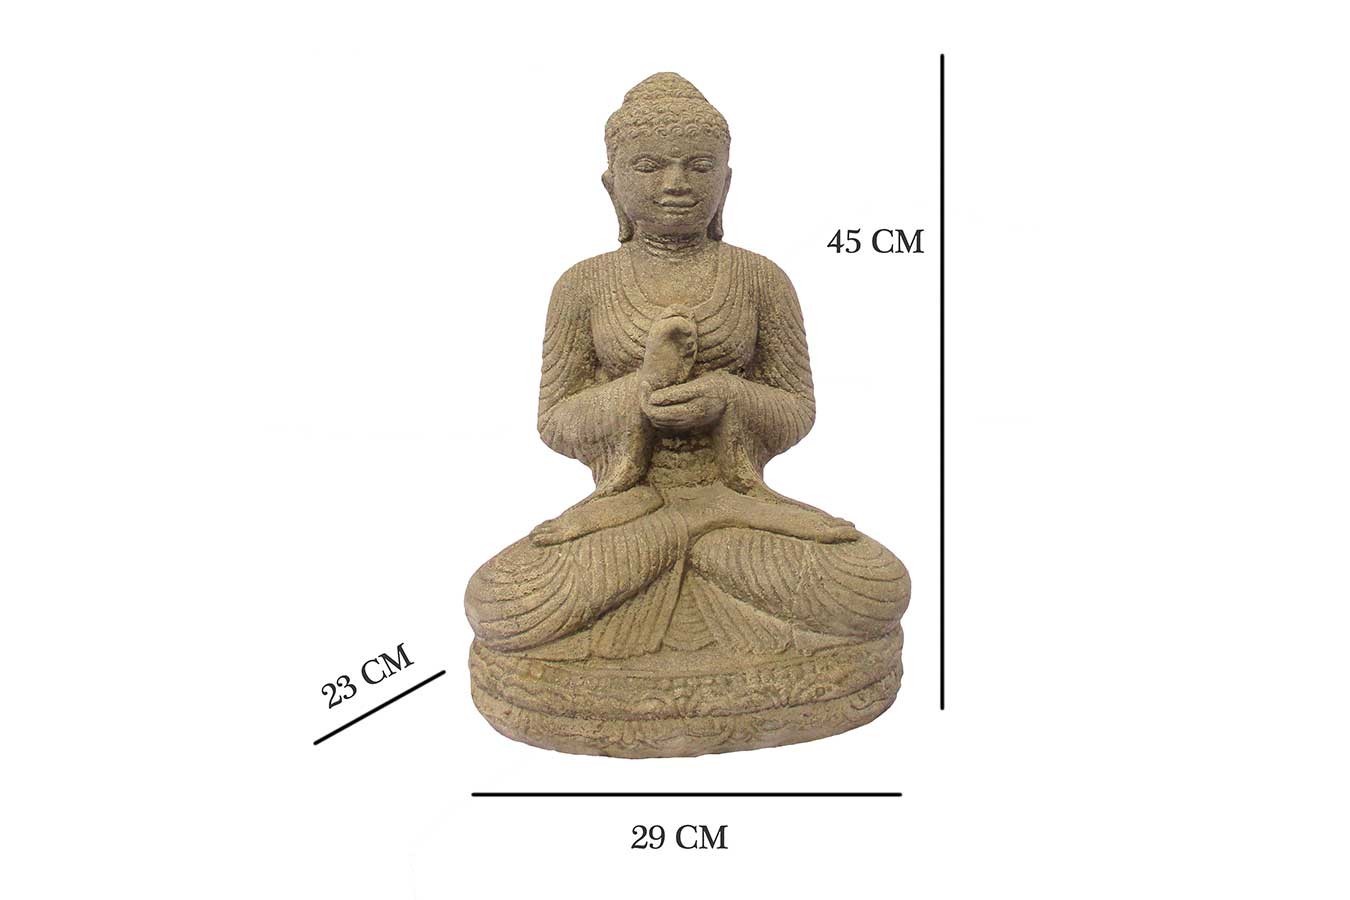 H Steinfigur Shop Sitzender 45 cm Buddha Online daslagerhaus -